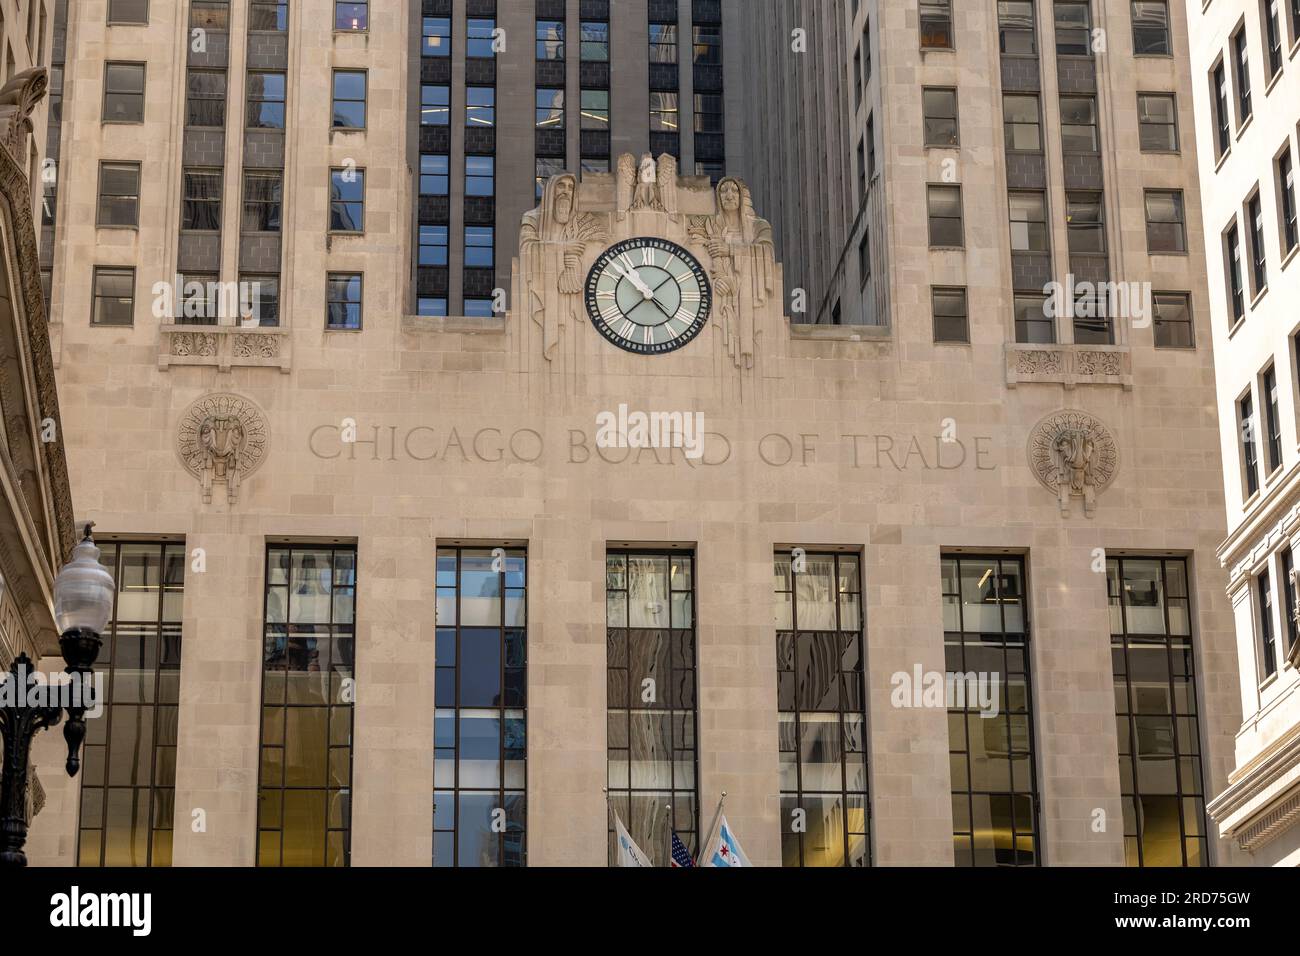 La fachada del edificio de la Junta de Comercio de Chicago en el distrito financiero de Chicago, EE.UU. En W Jackson Blvd, Chicago, Illinois América Foto de stock